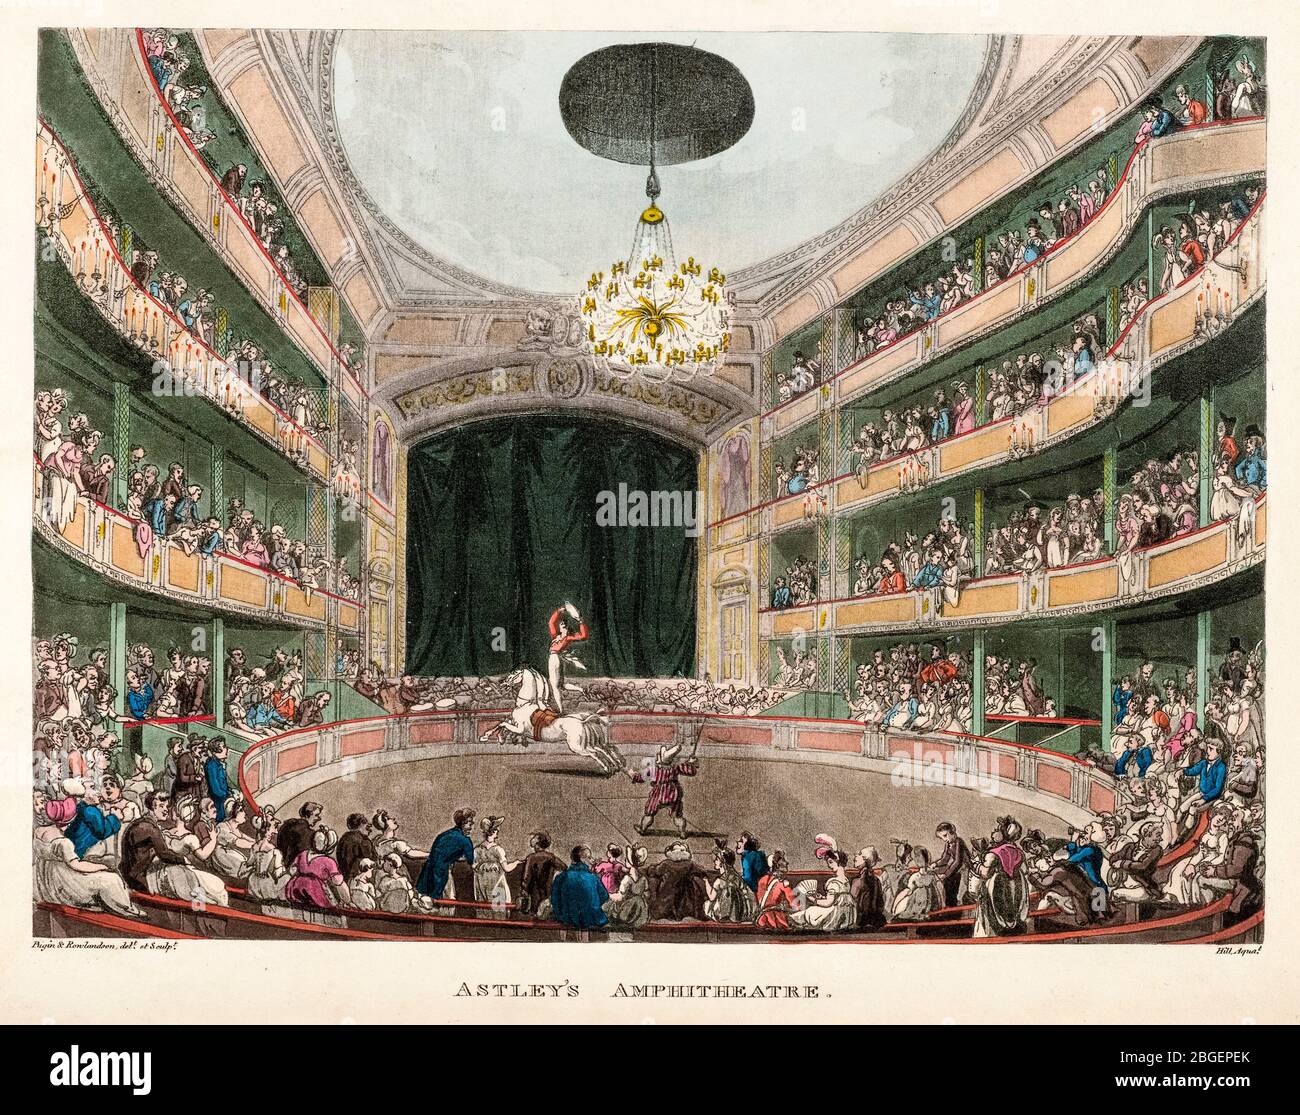 Thomas Rowlandson et Augustus Charles Pugin, amphithéâtre d'Astley, gravure, 1808-1810 Banque D'Images